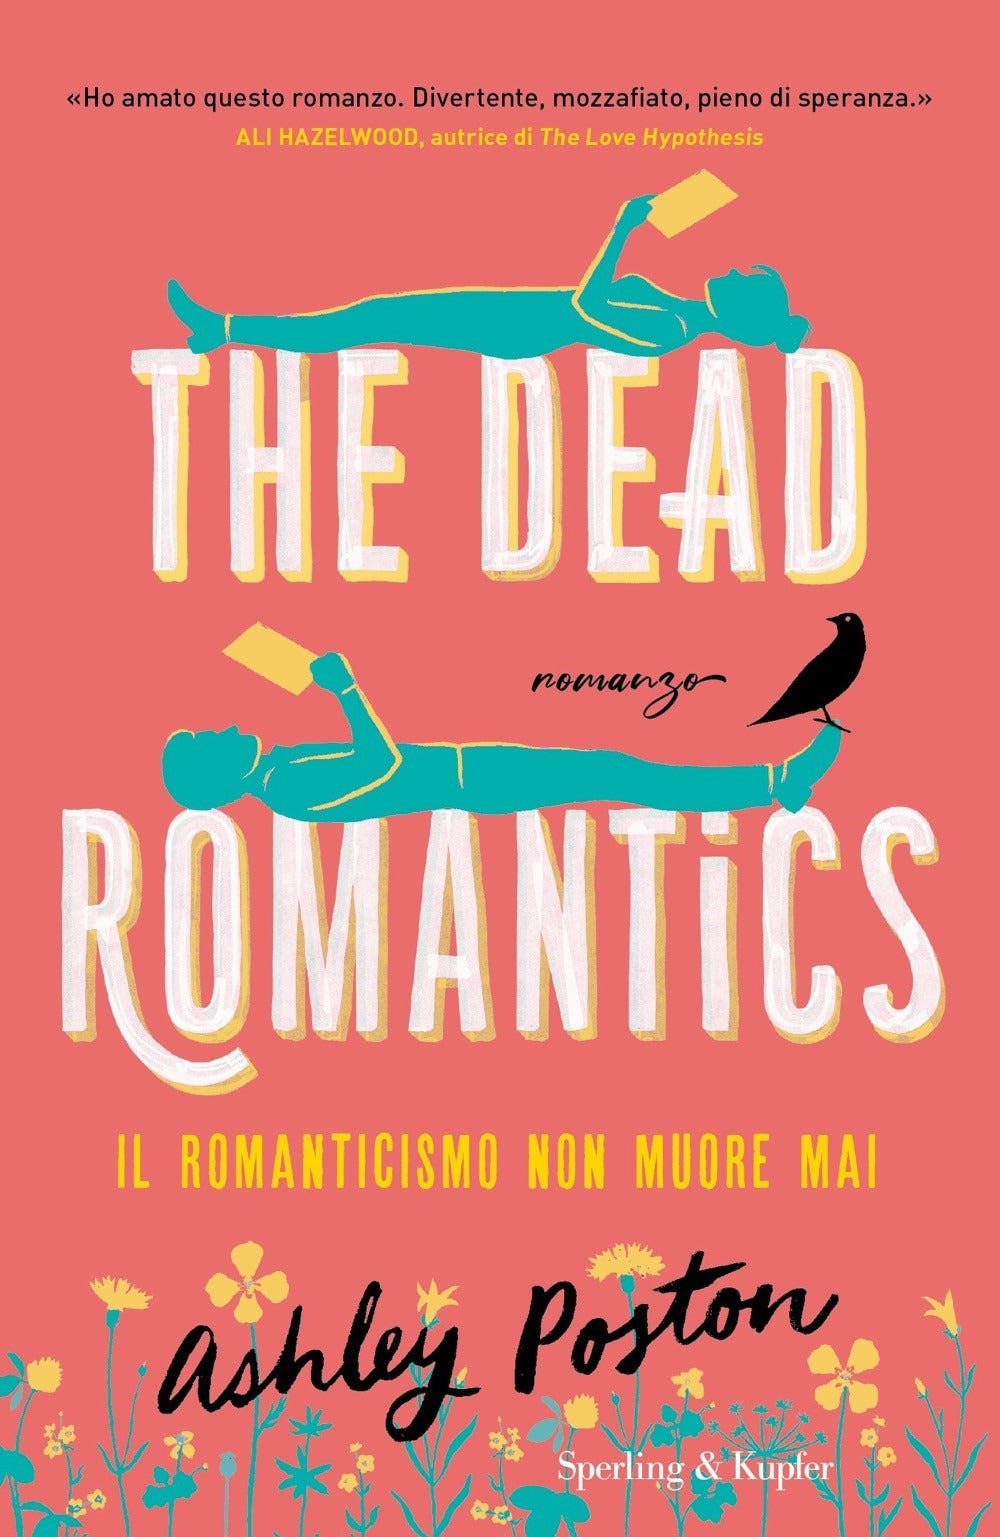 The dead romantics. Il romanticismo non muore mai